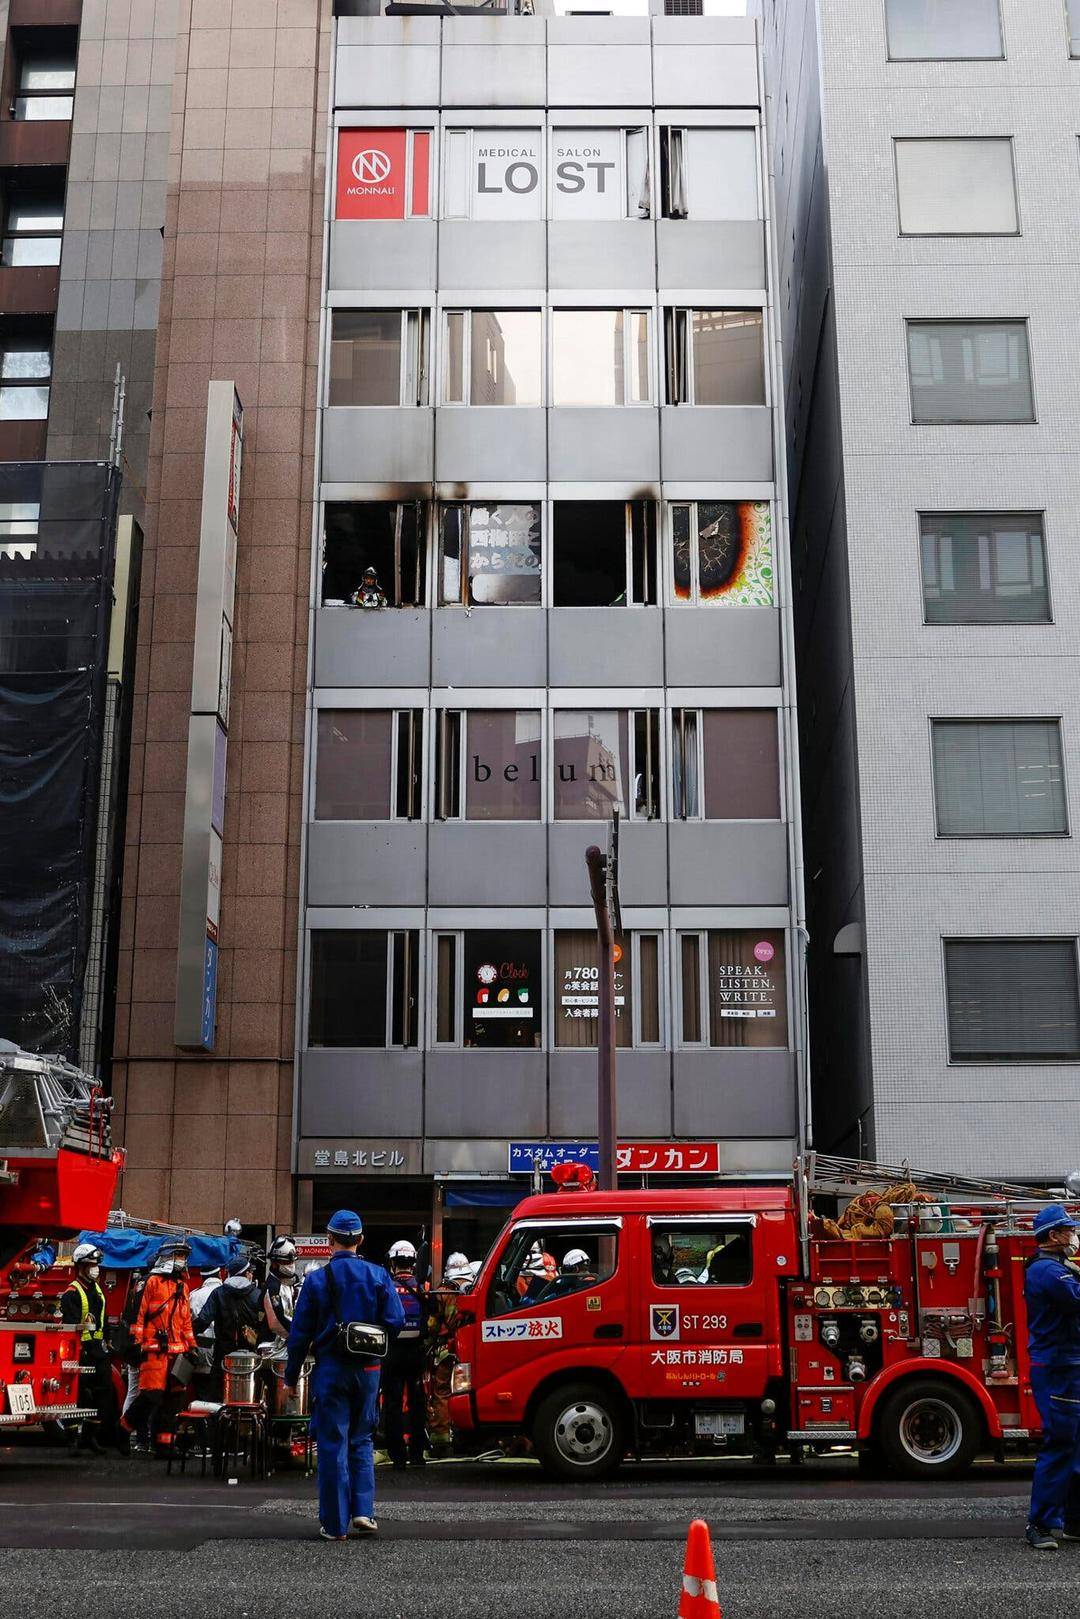 日本の大阪での2回の連続放火攻撃で30分以内に少なくとも24人が死亡し、容疑者は最初に住居を燃やし、次に精神科クリニックを燃やすことができた。